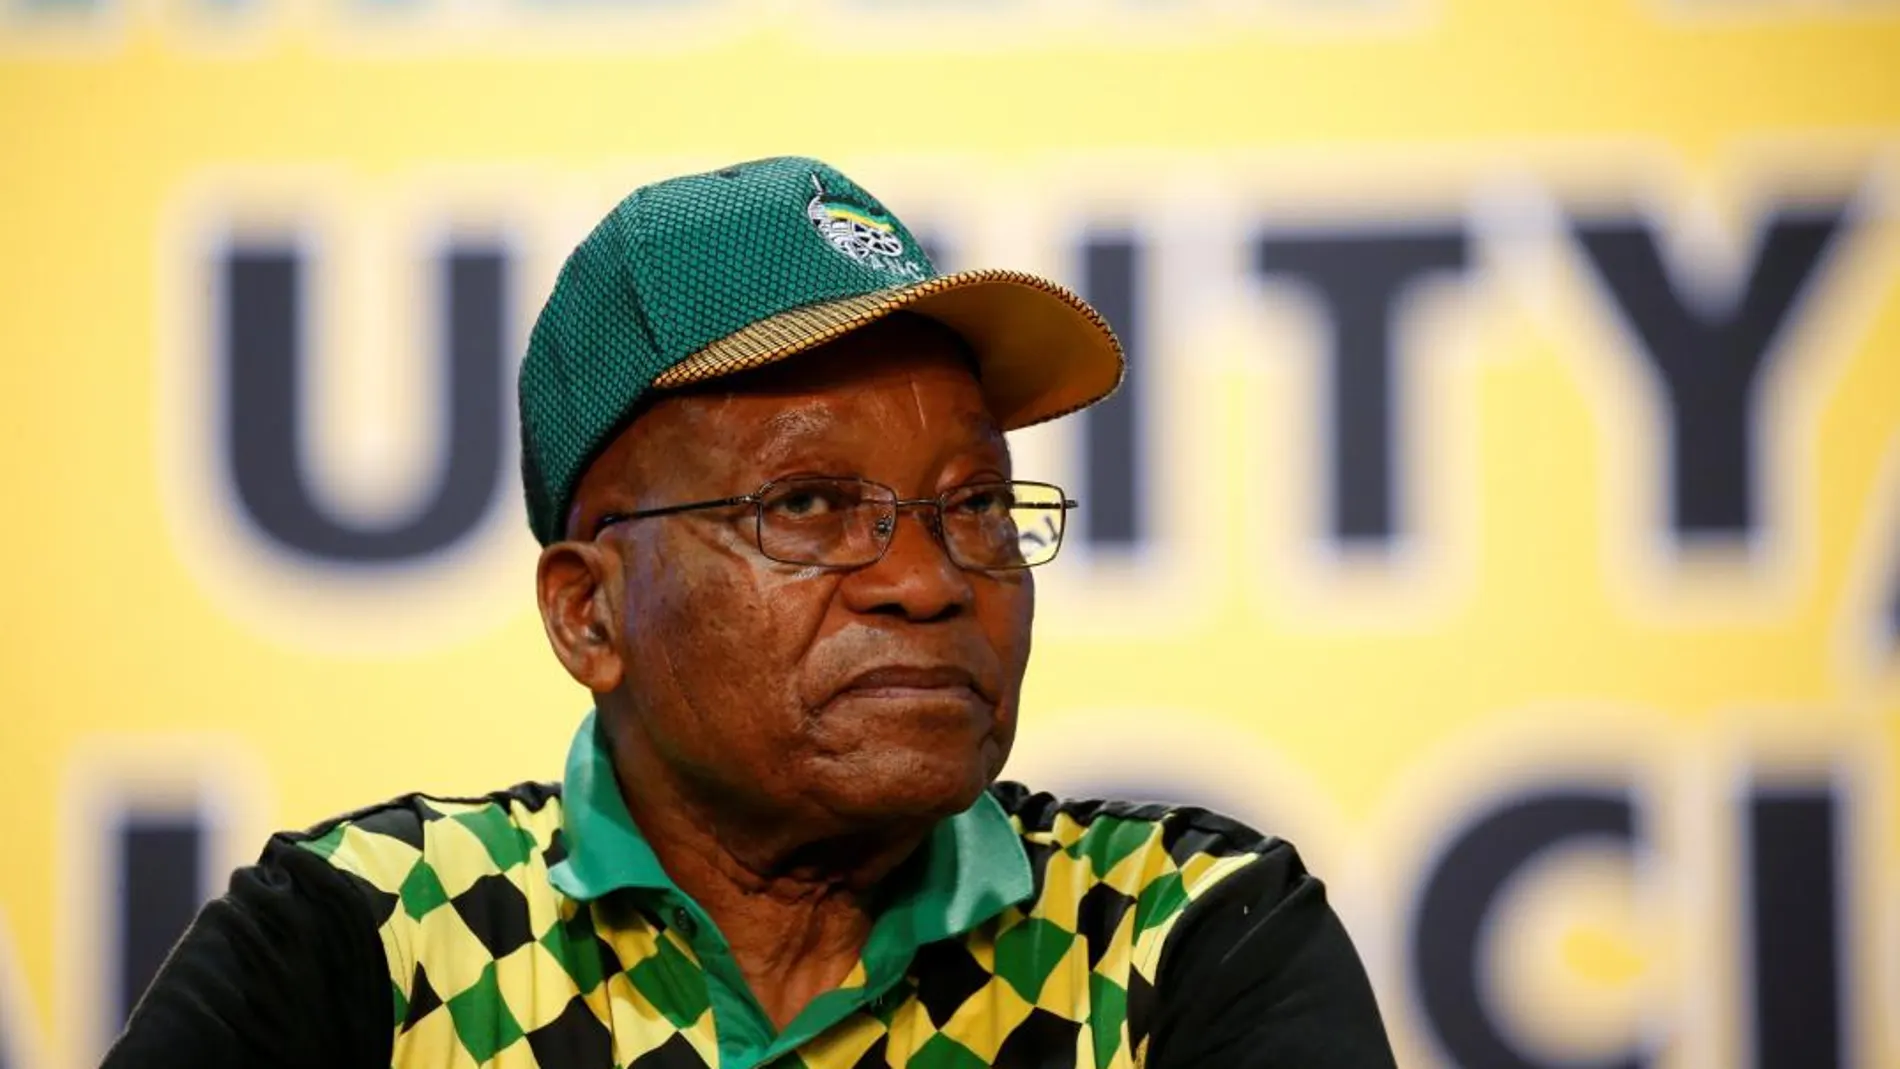 El partido gobernante en Sudáfrica, Jacob Zuma, en una imagen del pasado mes de diciembre